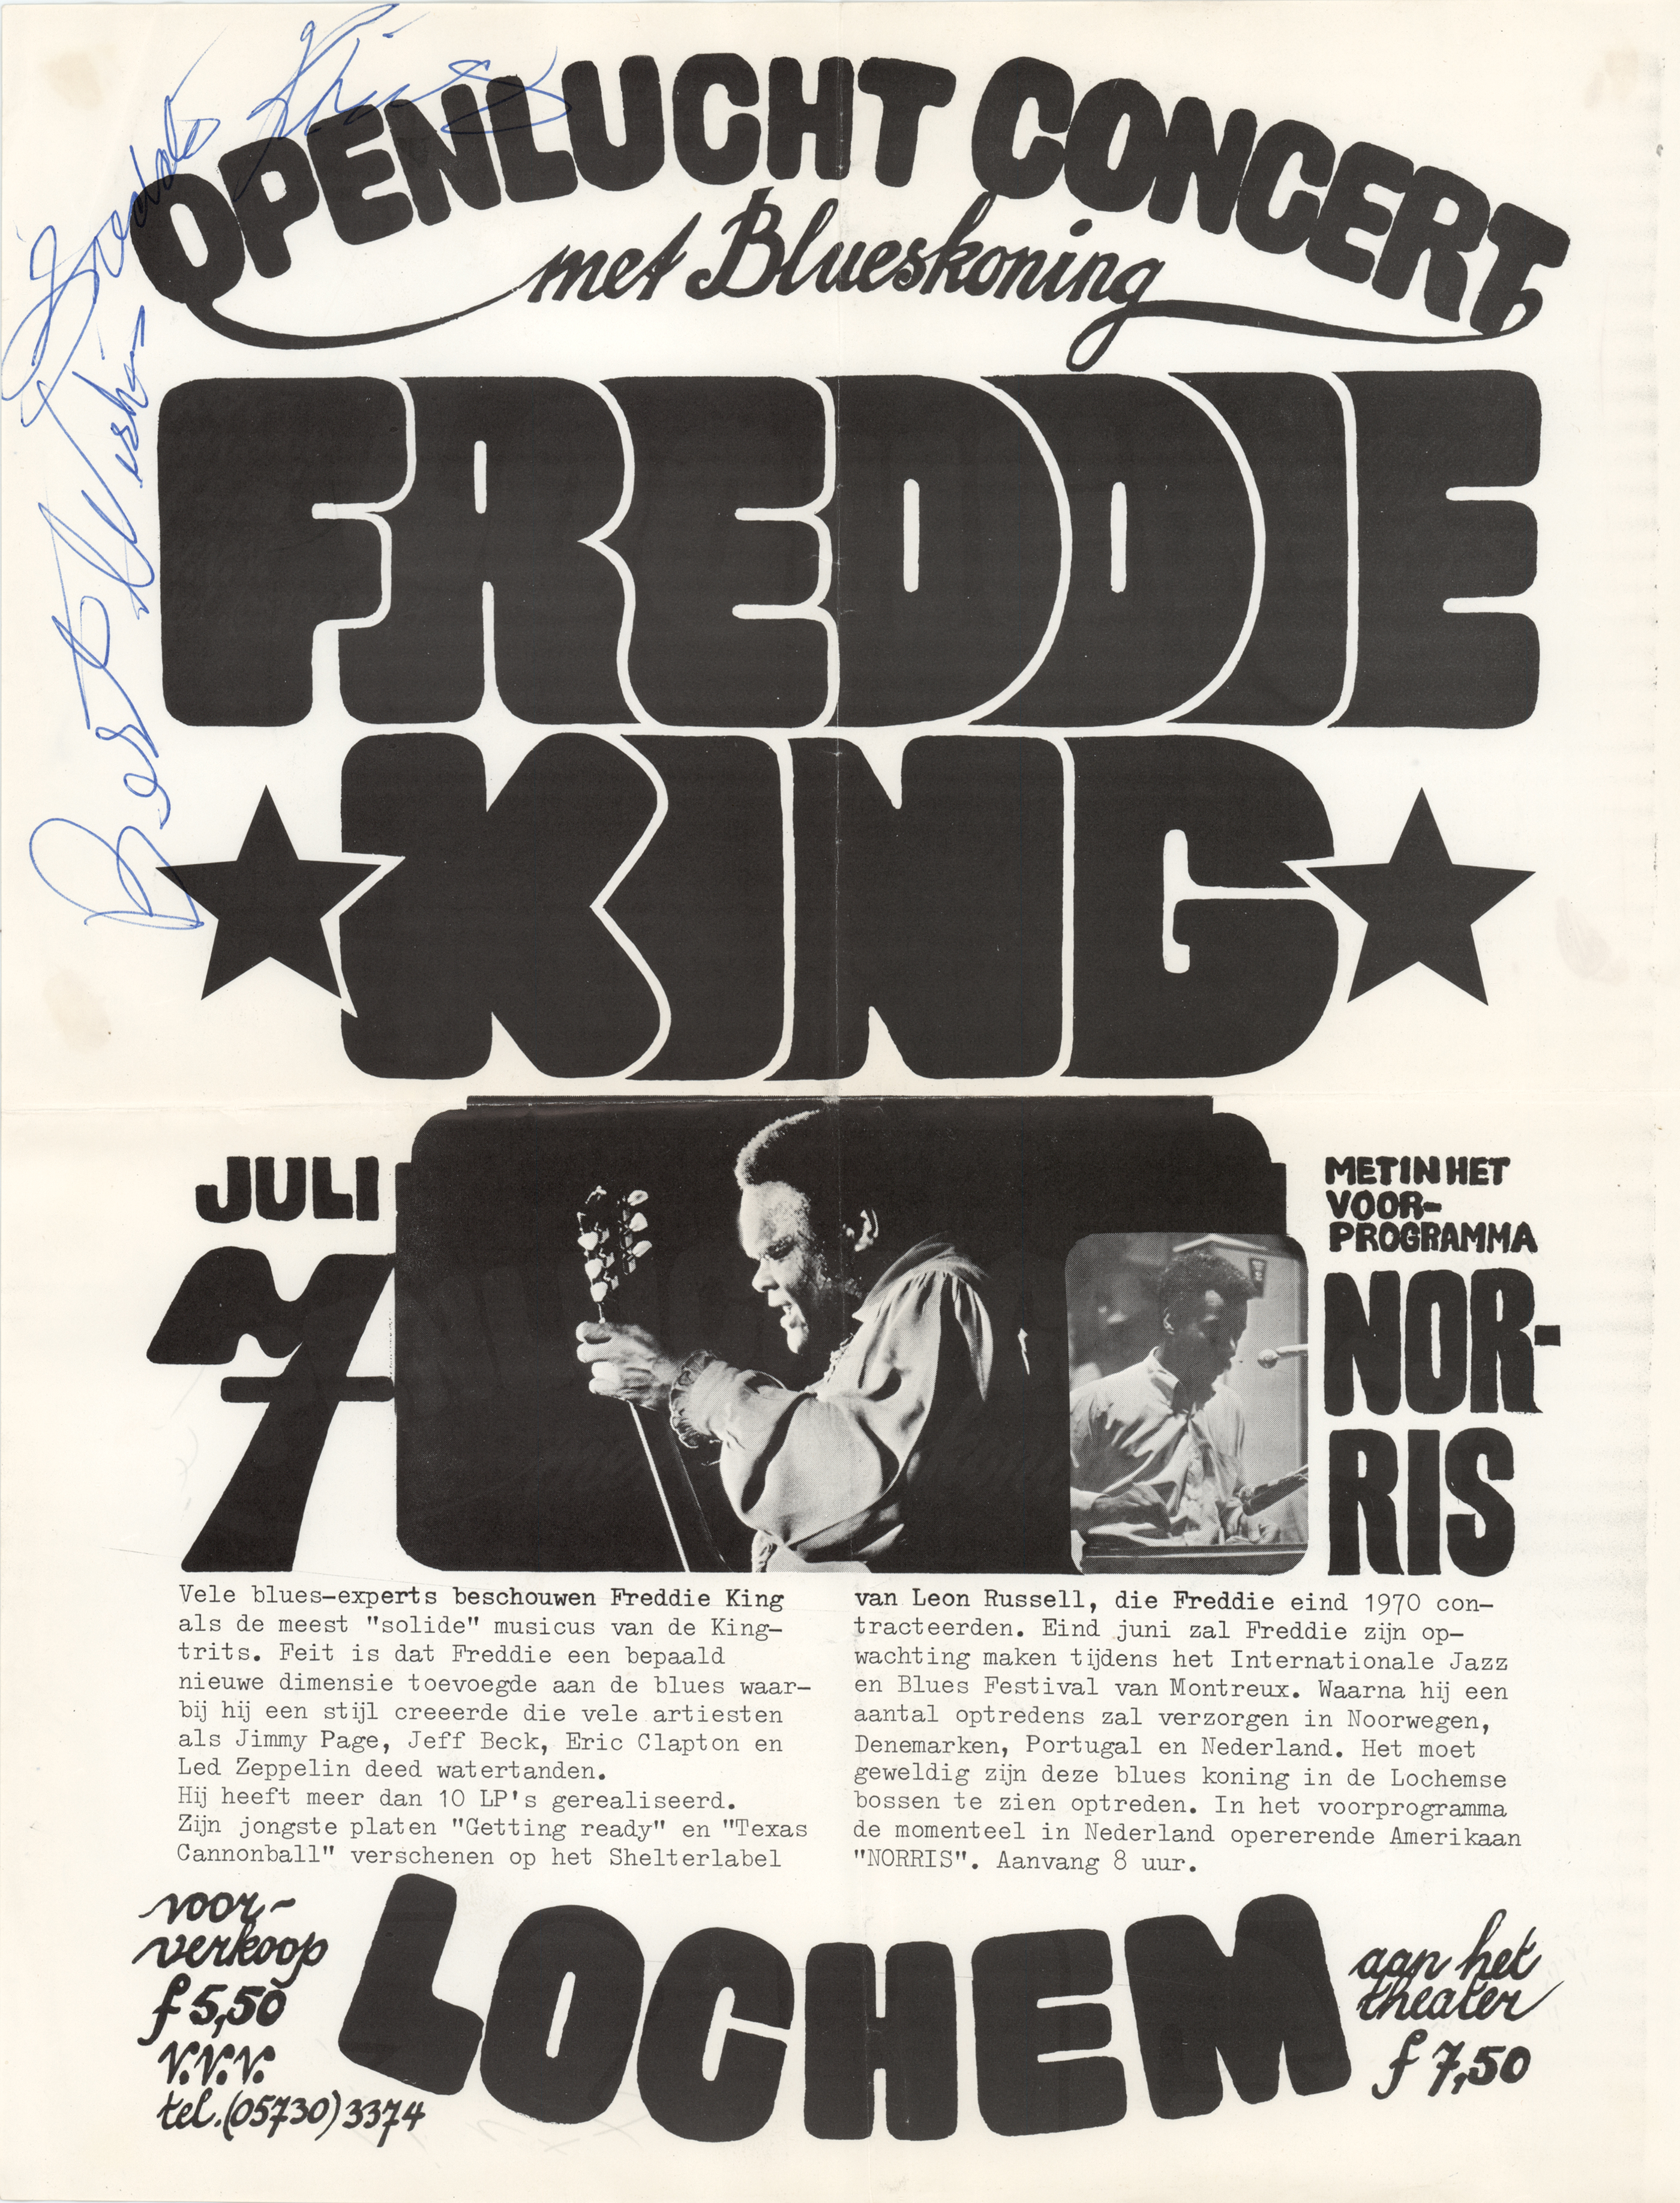 Lot #349 Freddie King Signed 1973 Concert Poster